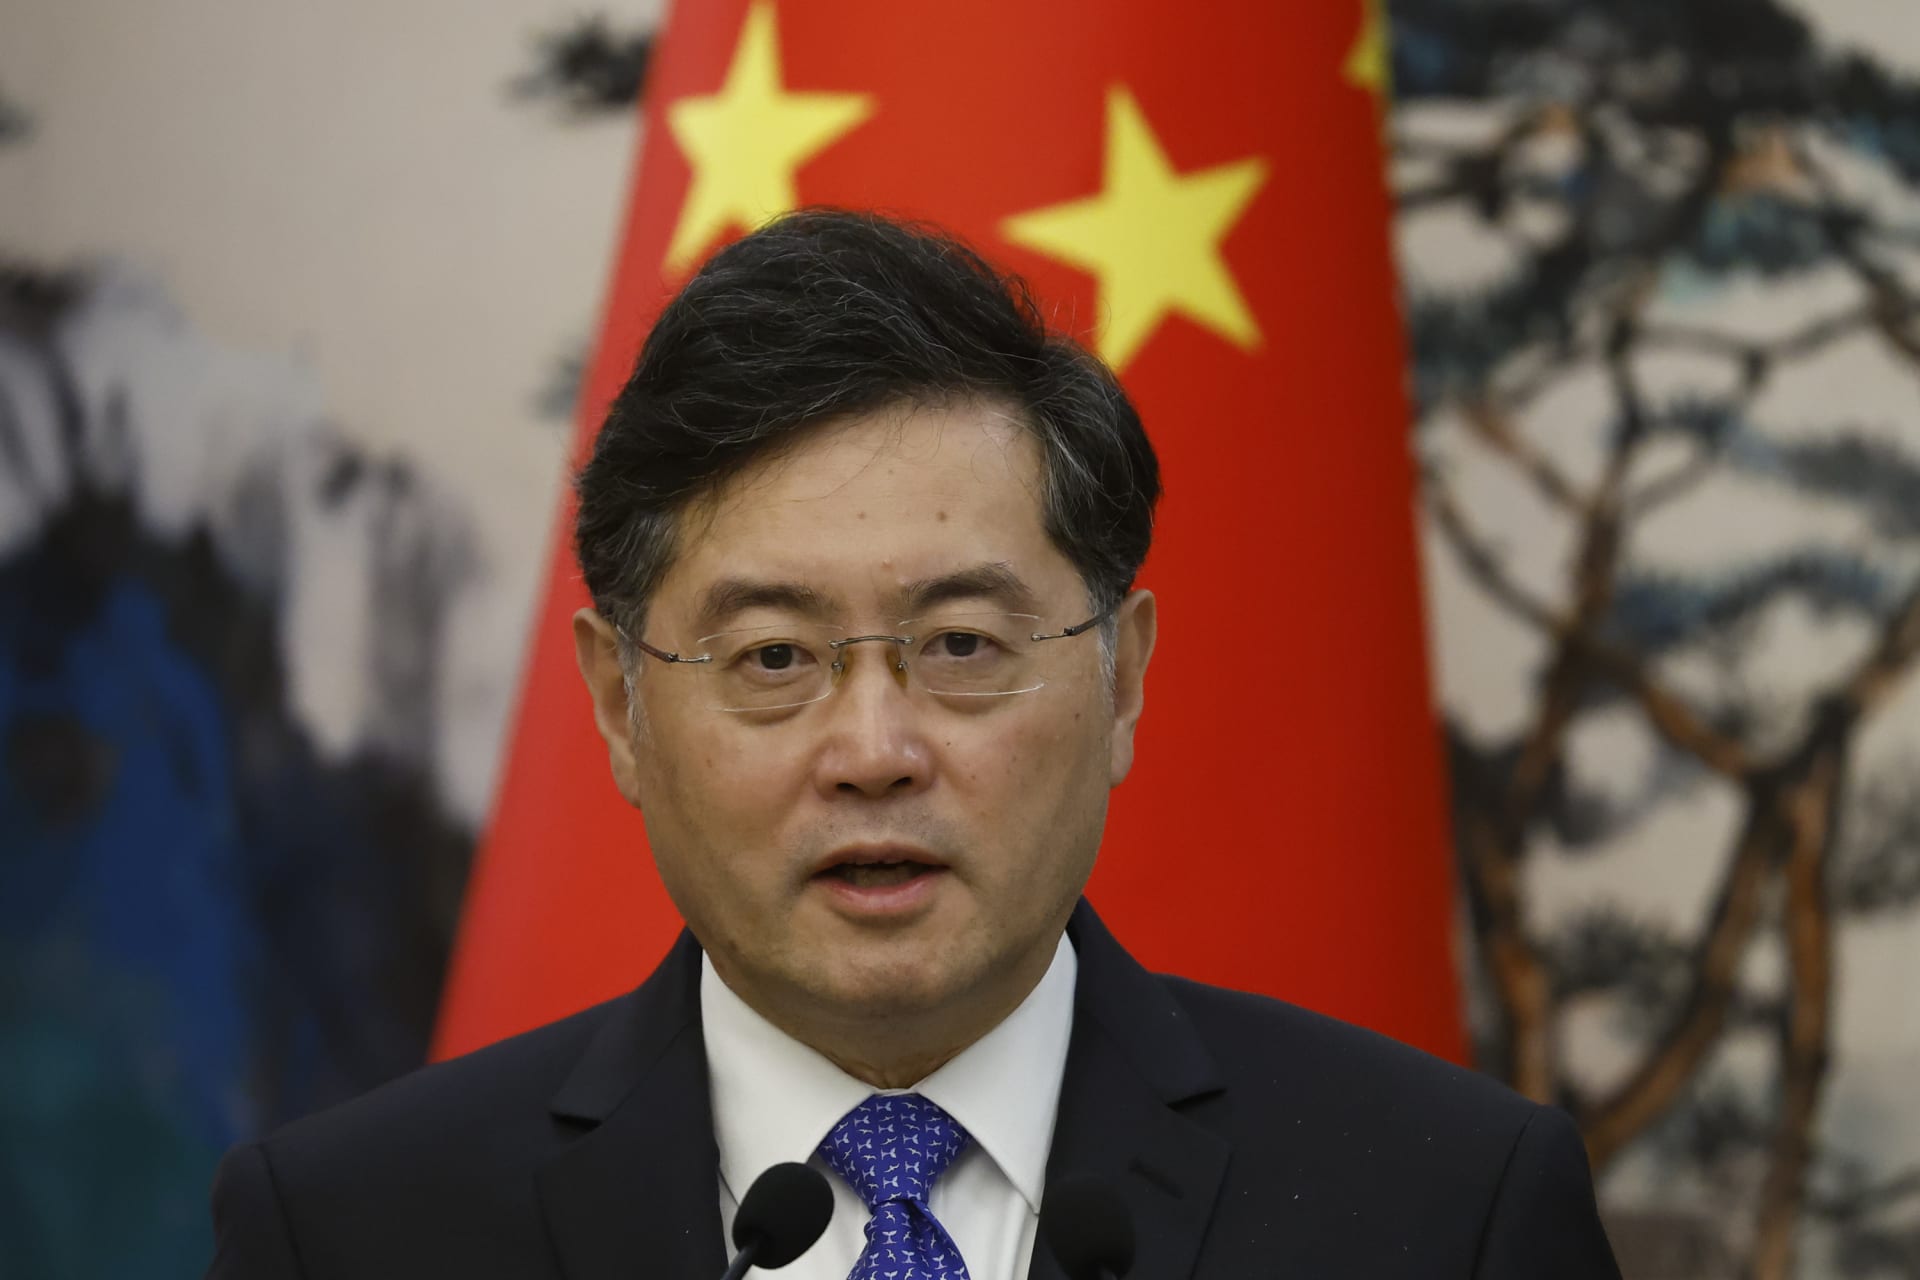 بعد تقرير حول "علاقة خارج إطار الزواج".. الصين ترفض التعليق على سبب إقالة وزير خارجيتها السابق